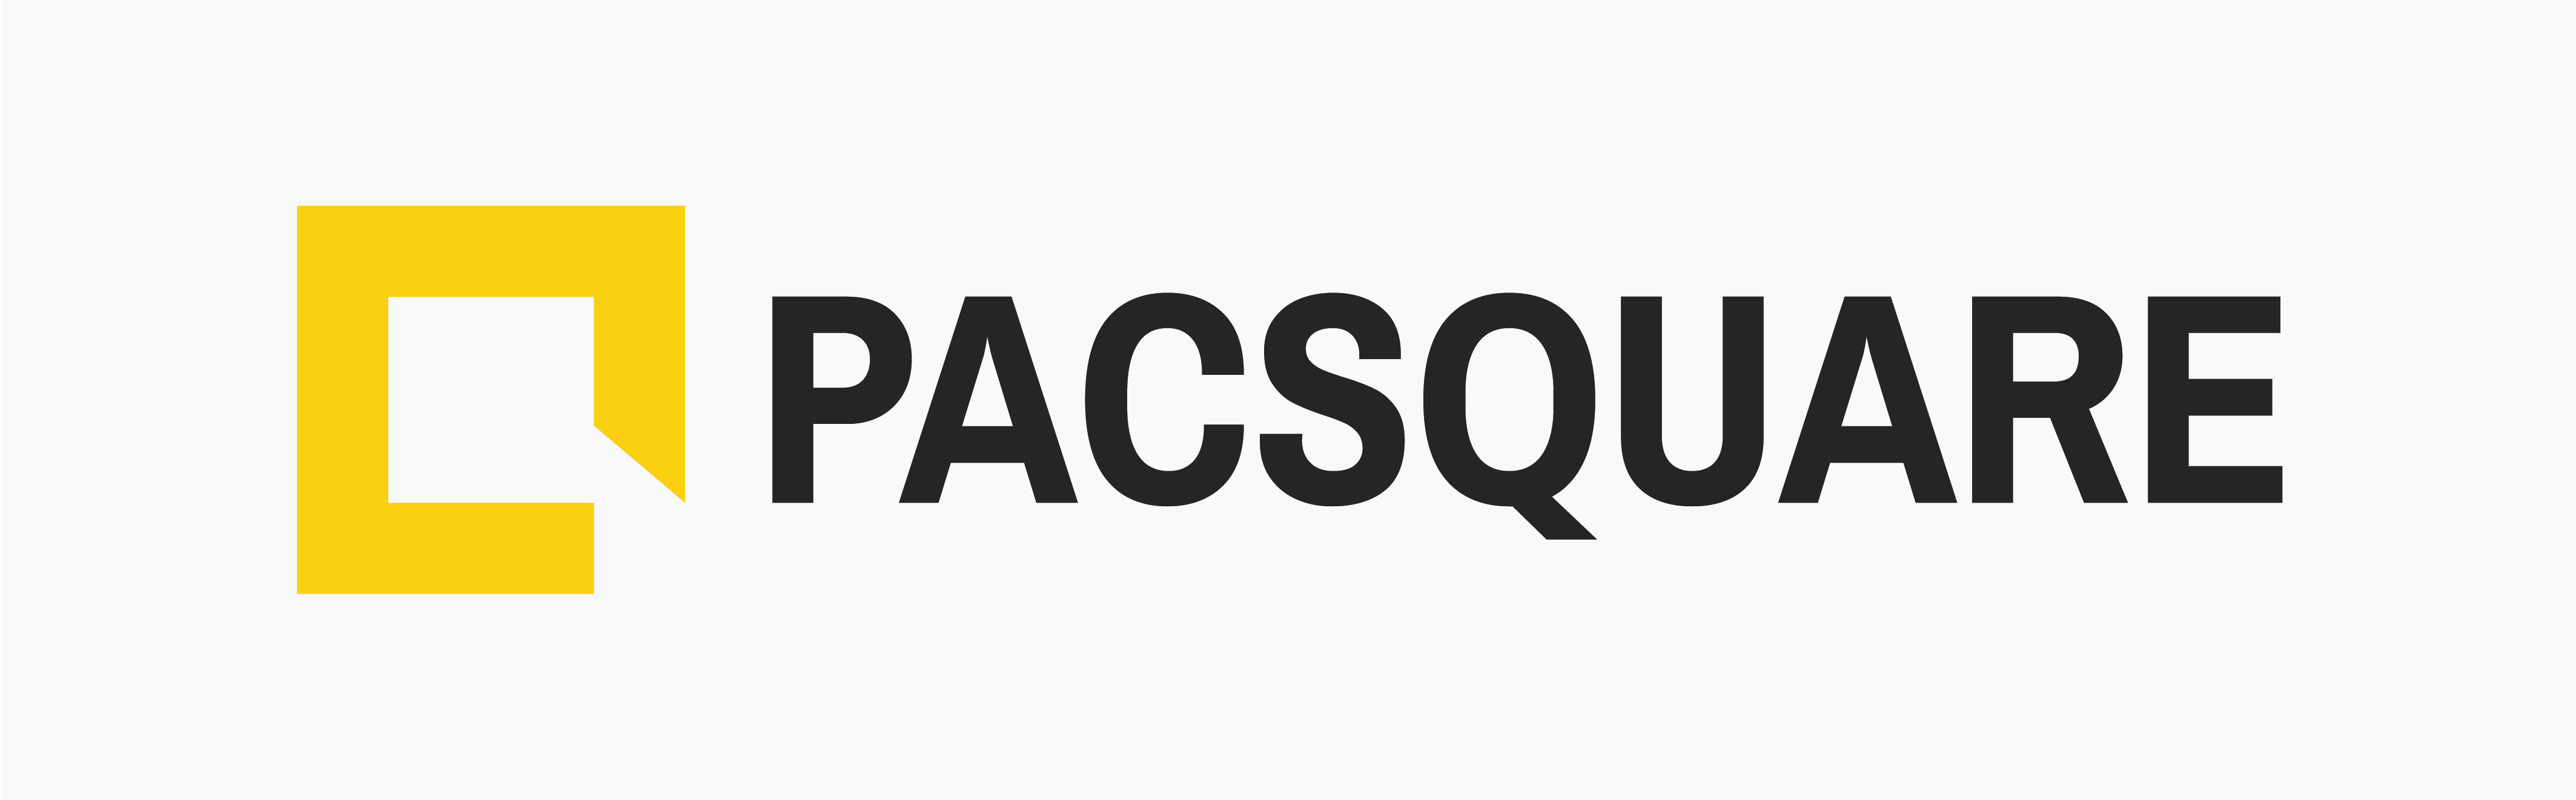 Pacsquare Technologies